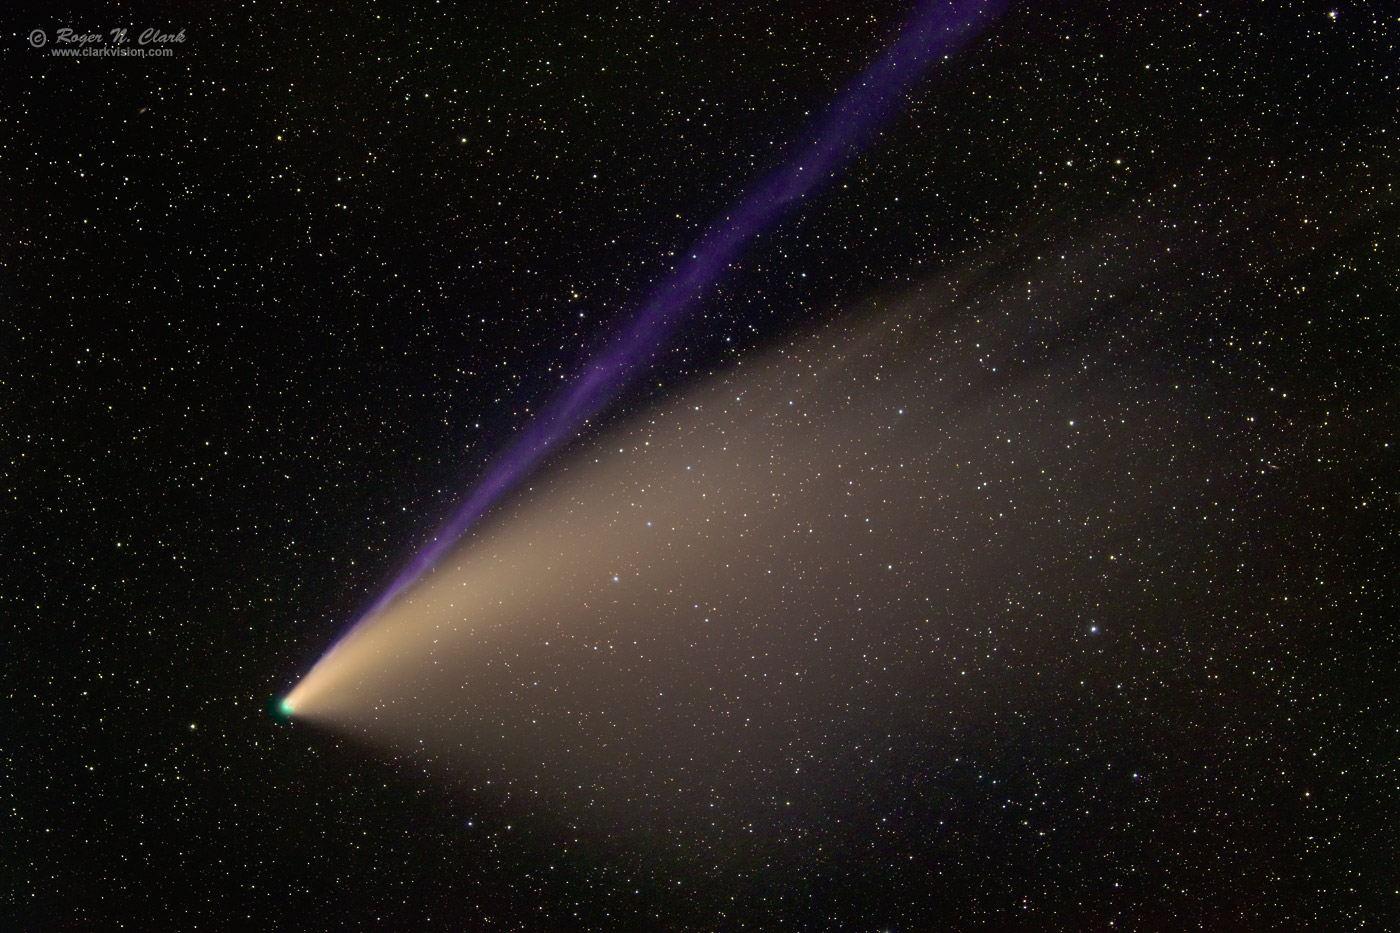 image comet-neowise-rnclark-105mm-c07-20-2020-IMG_8644-78-av30-e7.f-1400s.jpg is Copyrighted by Roger N. Clark, www.clarkvision.com